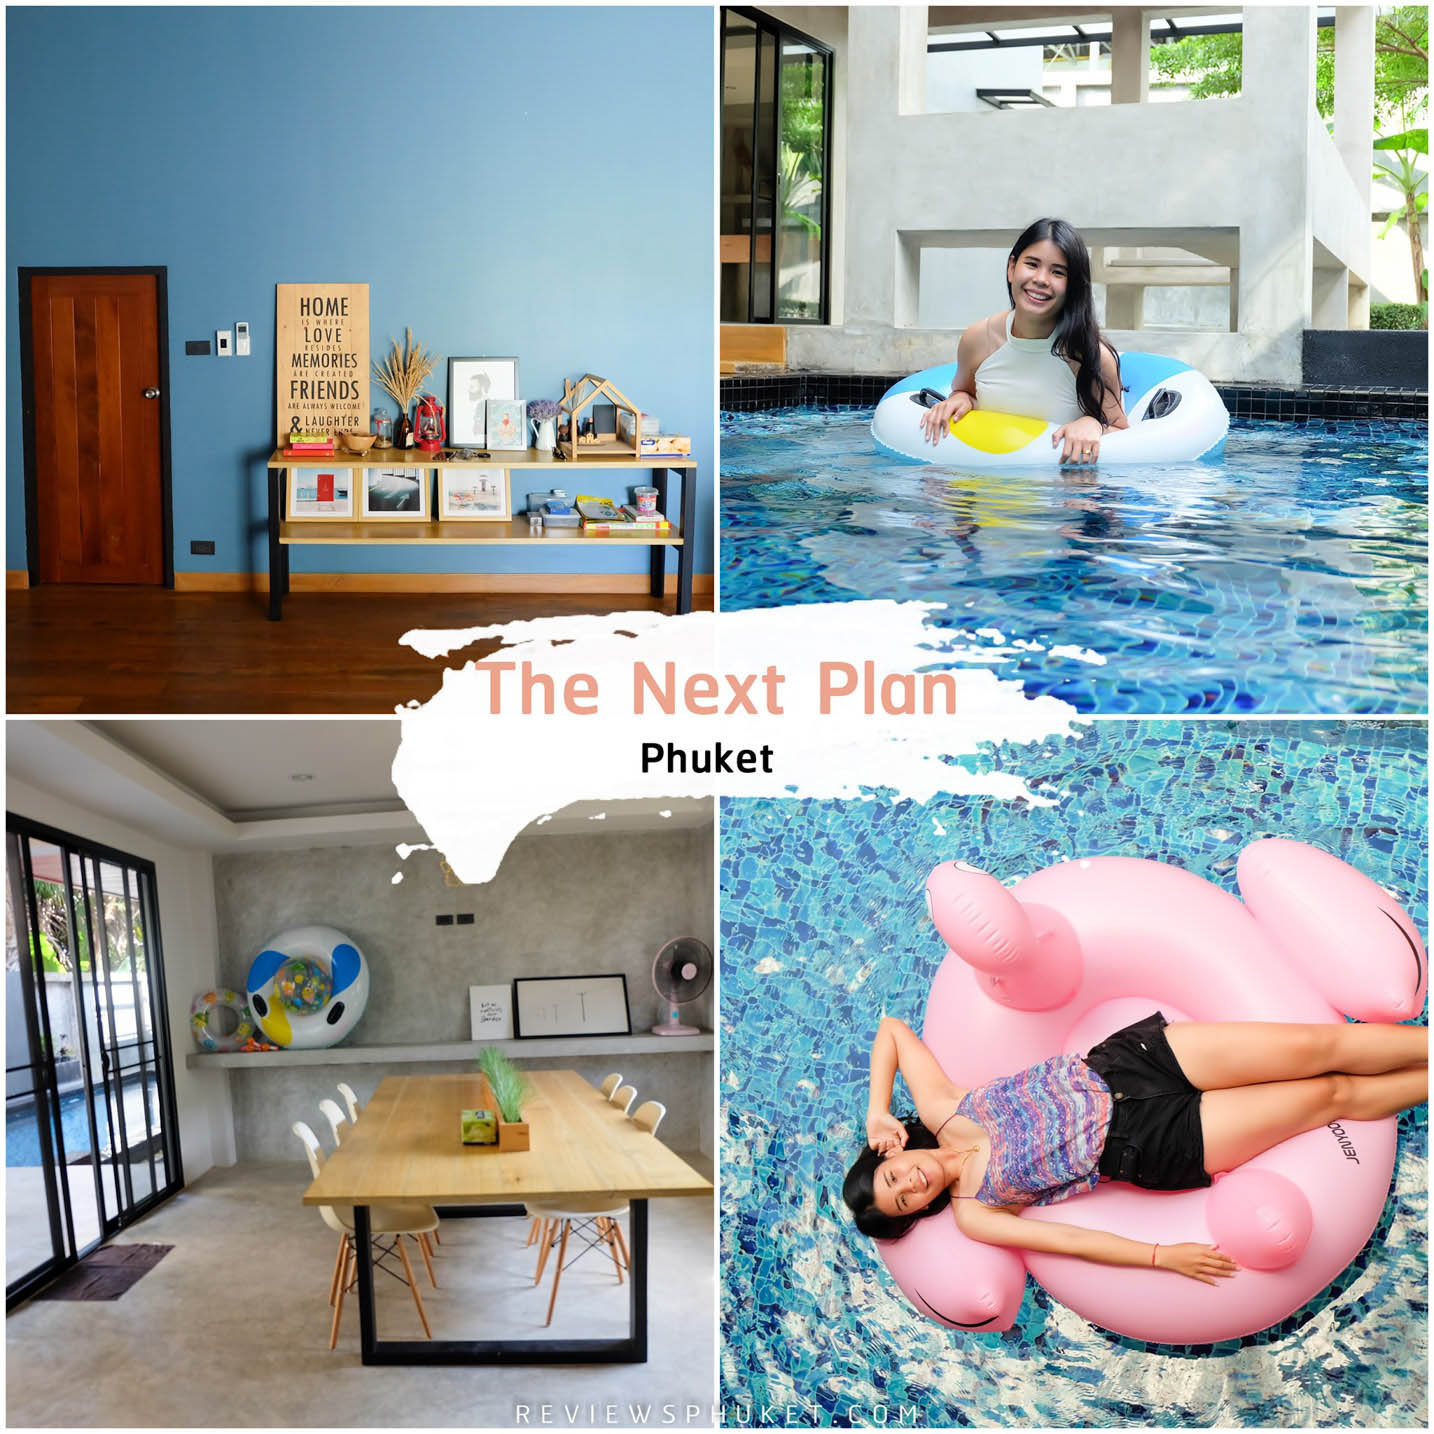 The Next Plan Phuket ที่พักภูเก็ต สุดสวยพักผ่อนชิวๆ มีสระ